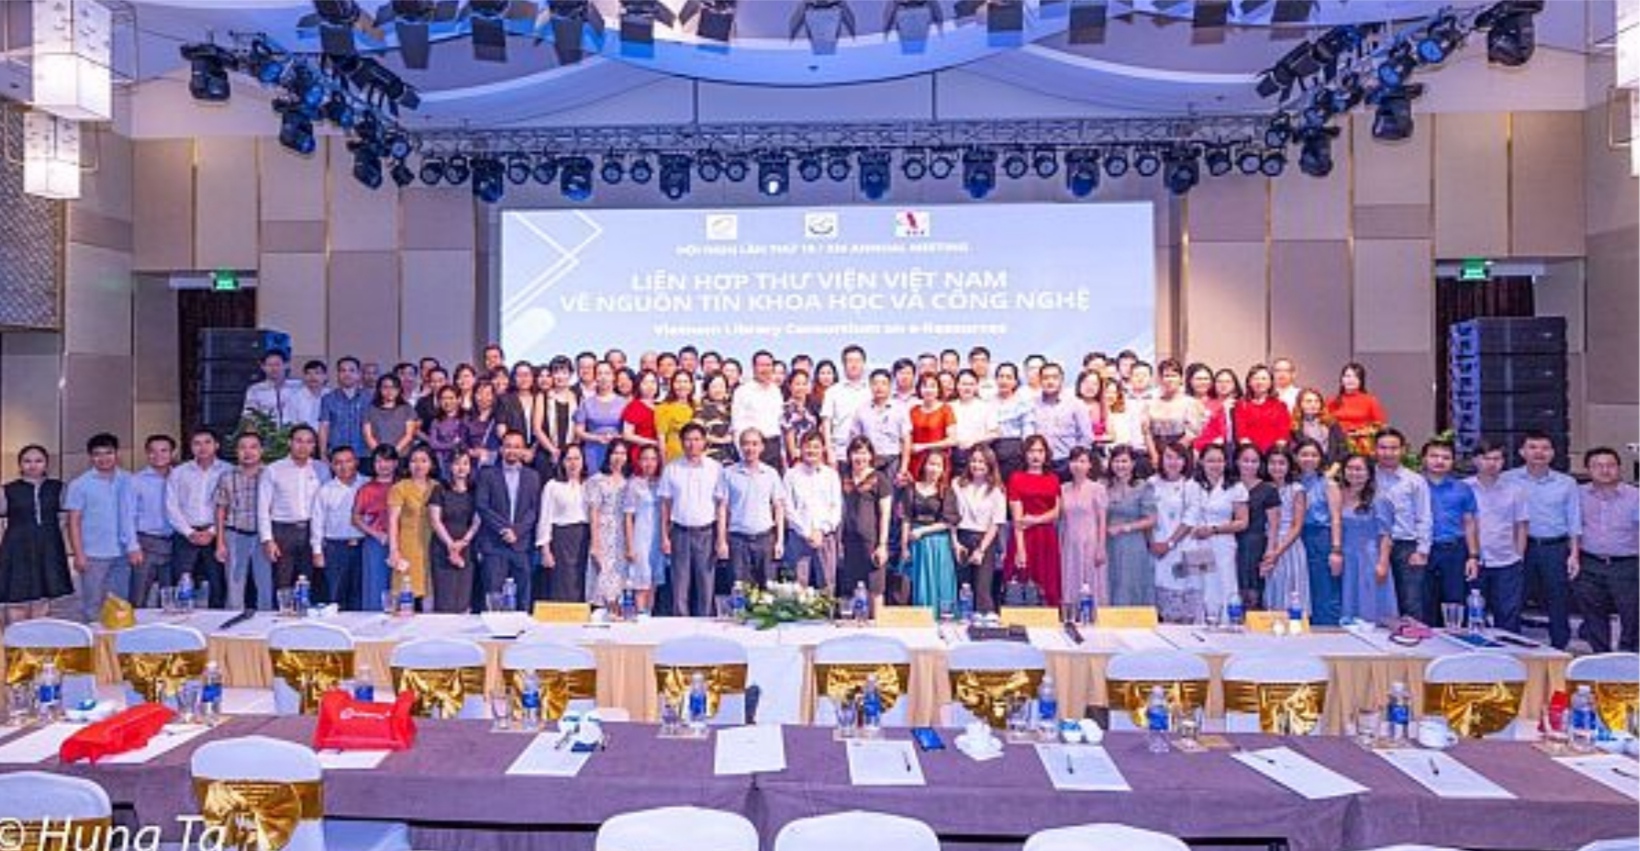 Lãnh đạo Trung tâm Thông tin - Thư viện tham dự Hội nghị Liên hợp Thư viện Việt Nam lần thứ 19